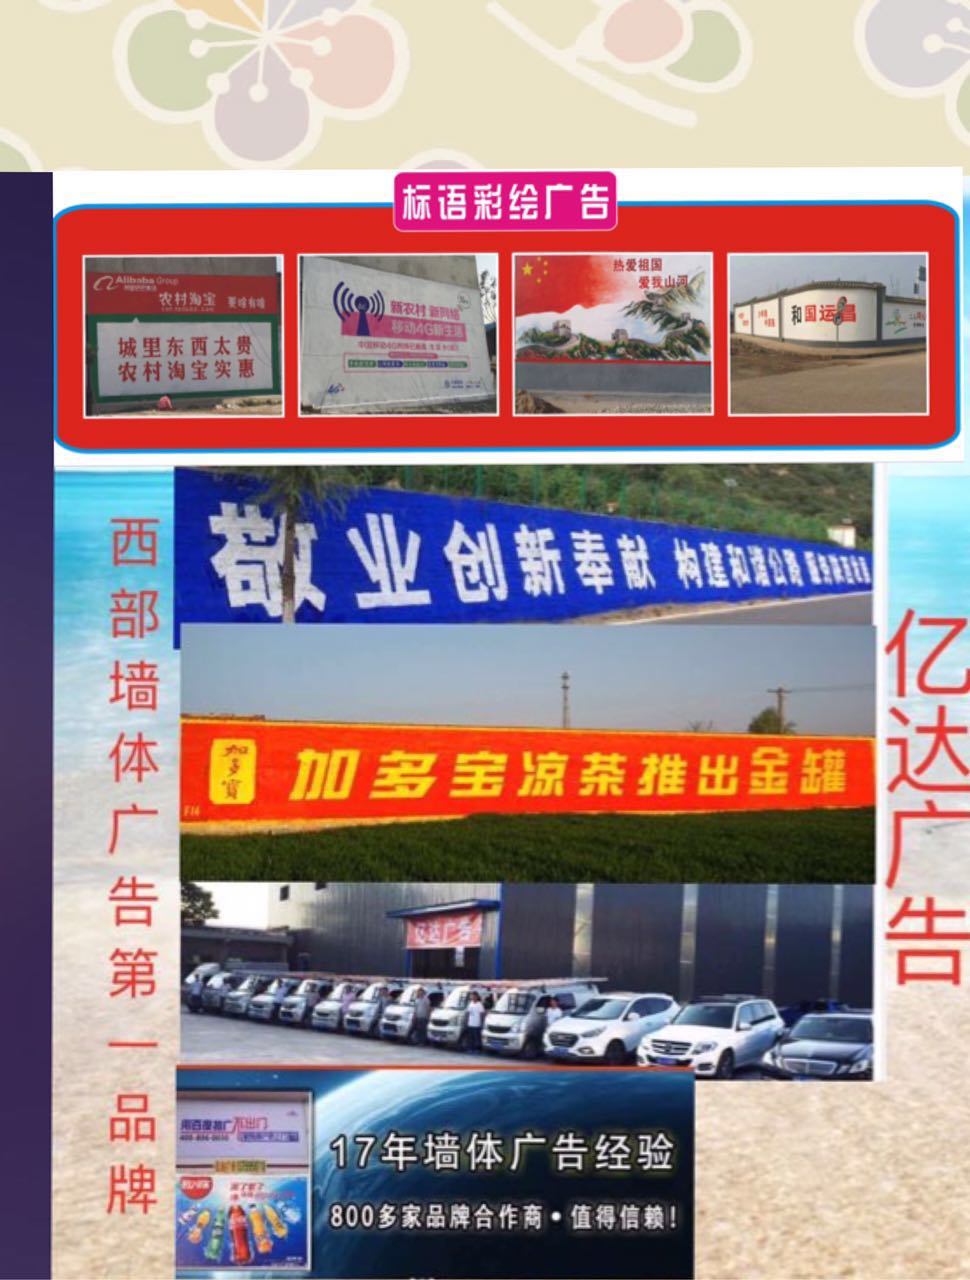 全民刷屏时代、内江市中区墙体广告脱颖而出18228170666